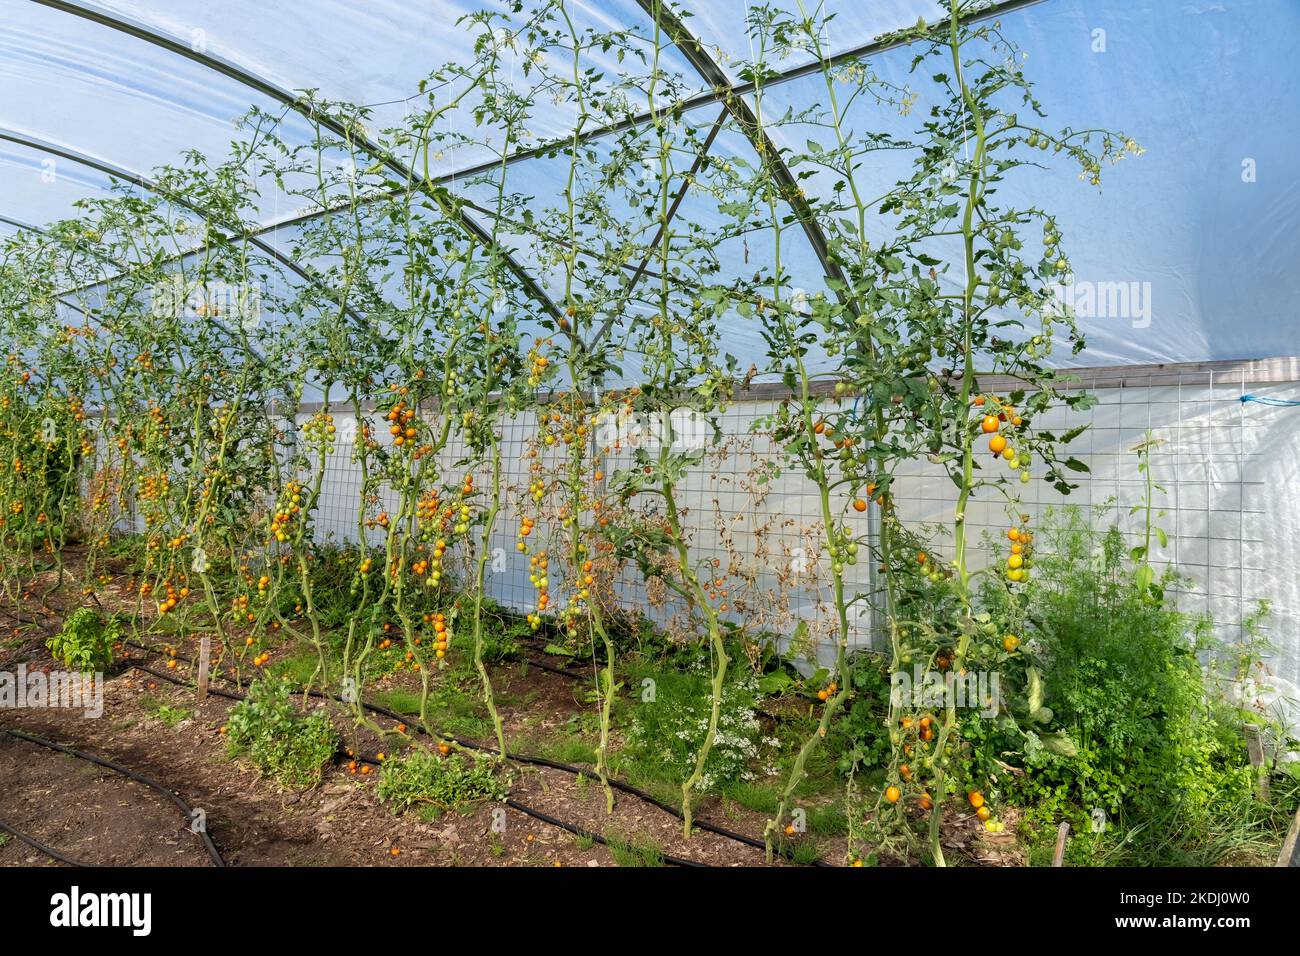 Chimacum, Washington, EE.UU. Tomates Sungold que crecen en enrejados de cuerda en un invernadero comercial Foto de stock